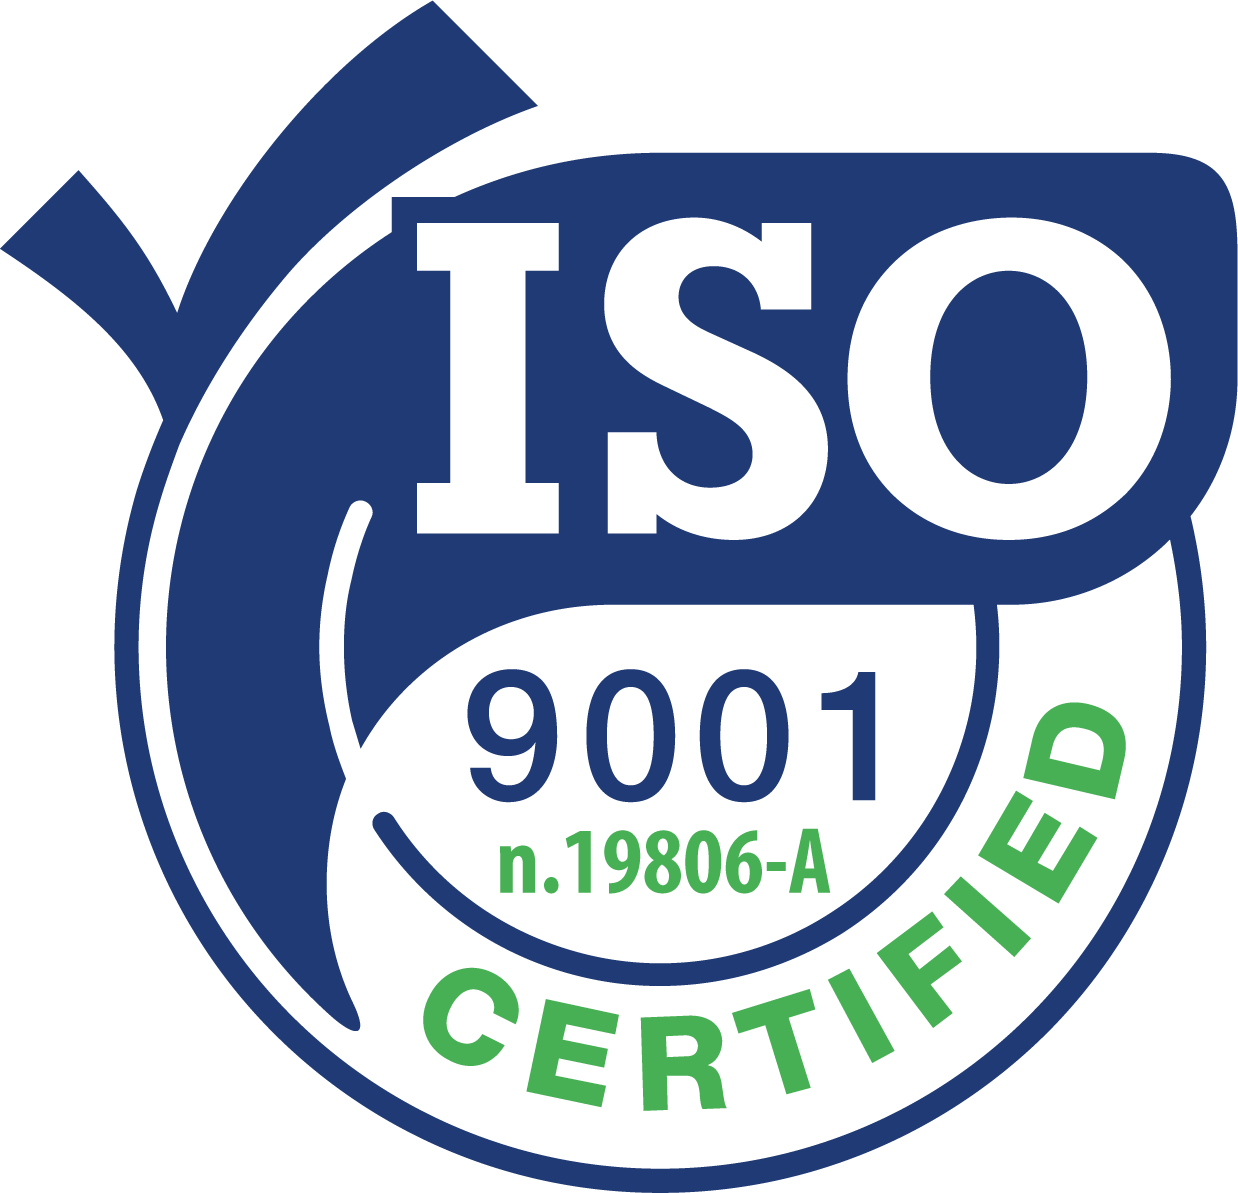 La BioDisinfestazione Certificata ISO 9001